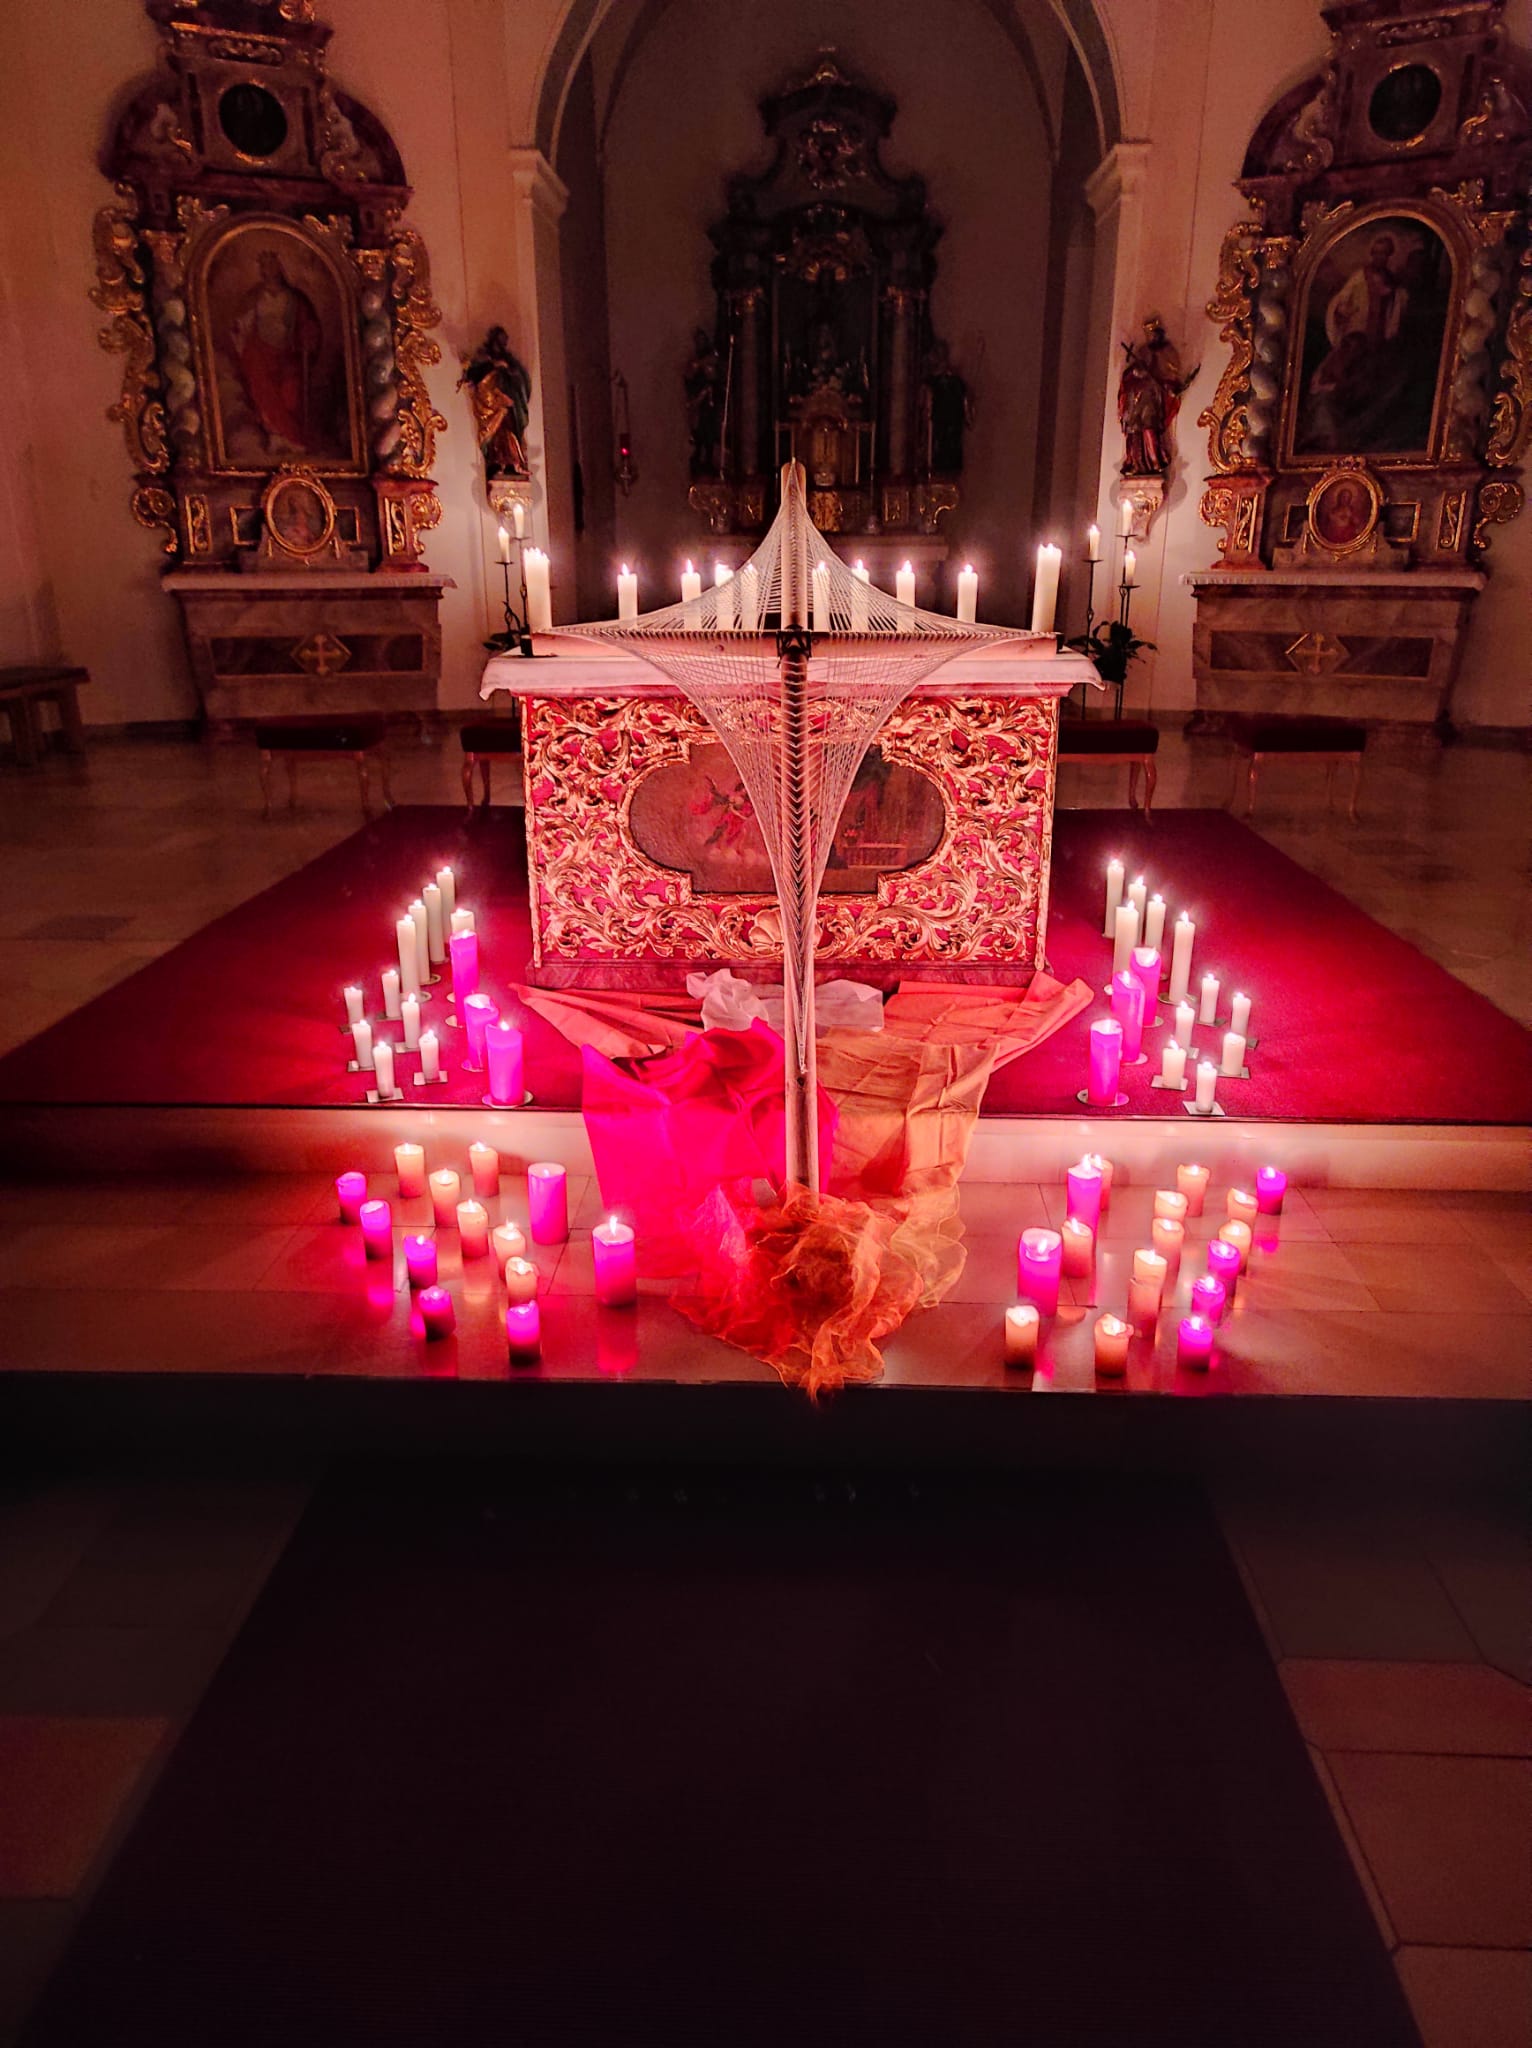 Bei der Nacht der Lichter wurde der Altar mit vielen Kerzen wunderbar geschmückt.